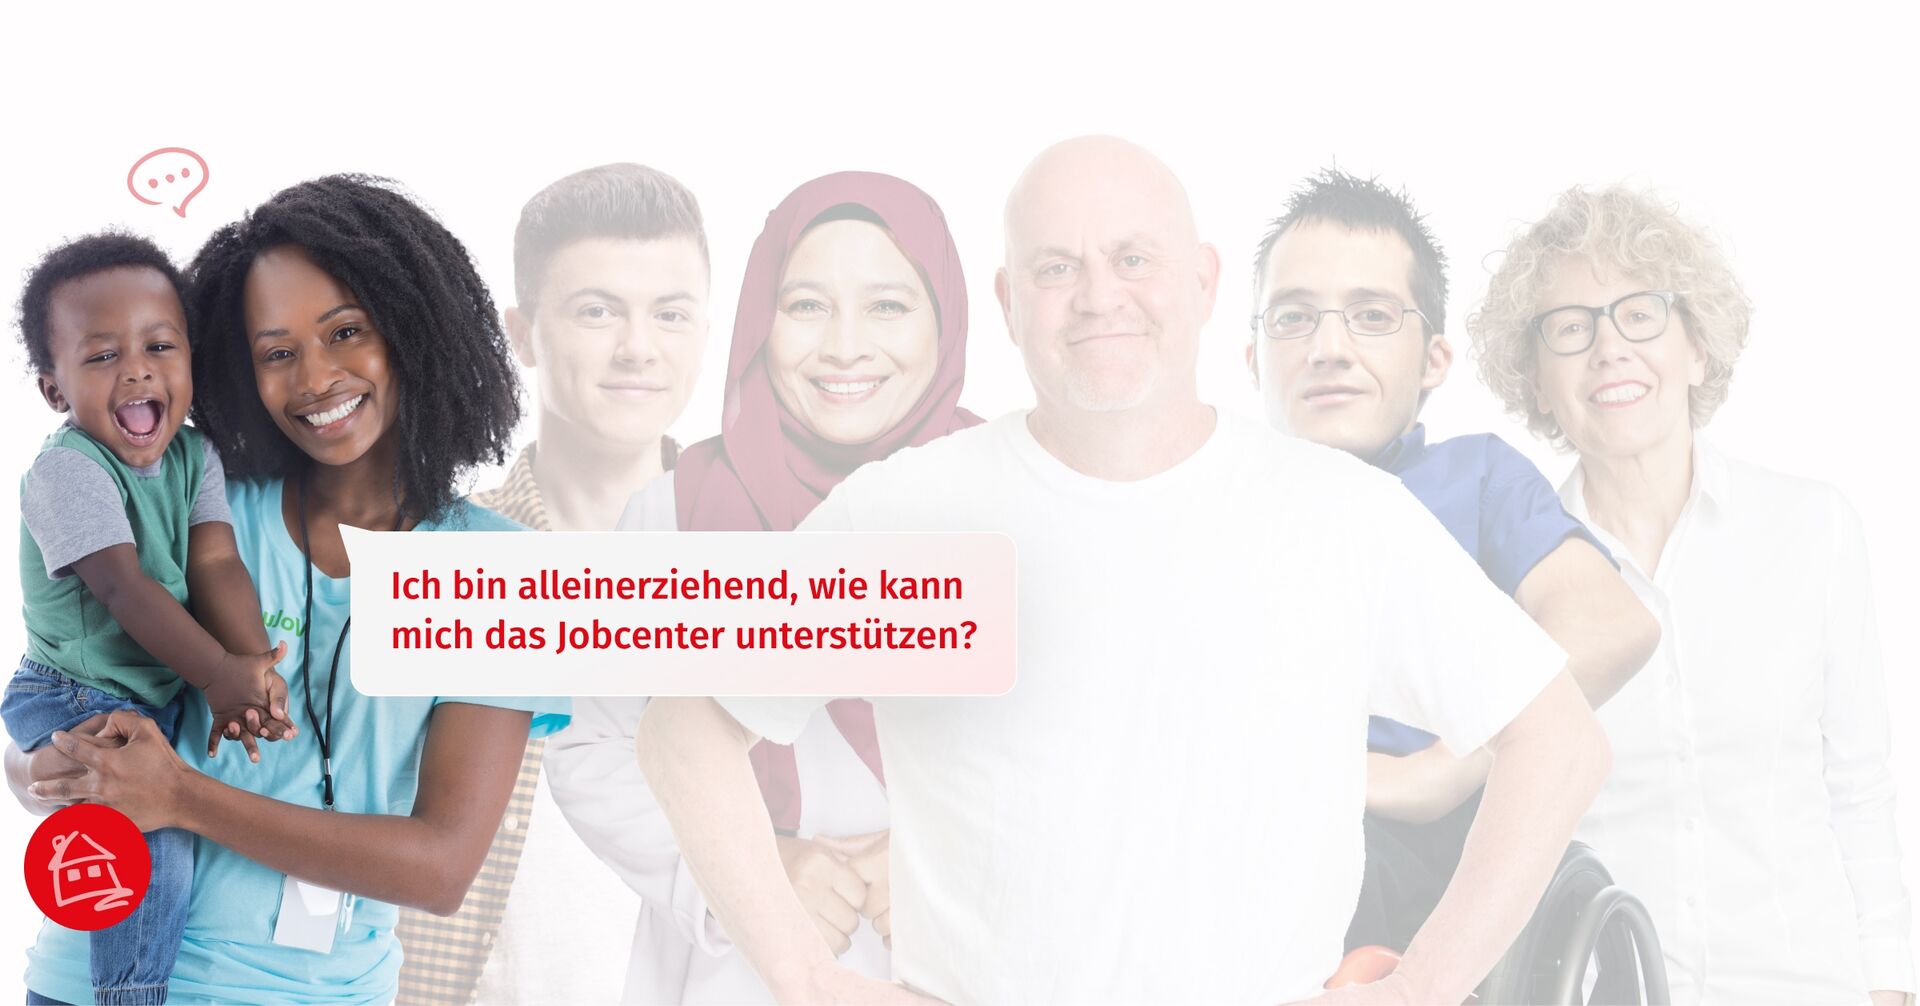 Eine diverse Zielgruppe von Menschen die vom Jobcenter Bremen unterstützt werden. Eine Frau mit Kind, die stellvertretend für die Zielgruppe der Alleinerziehenden steht, ist optisch hervorgehoben.